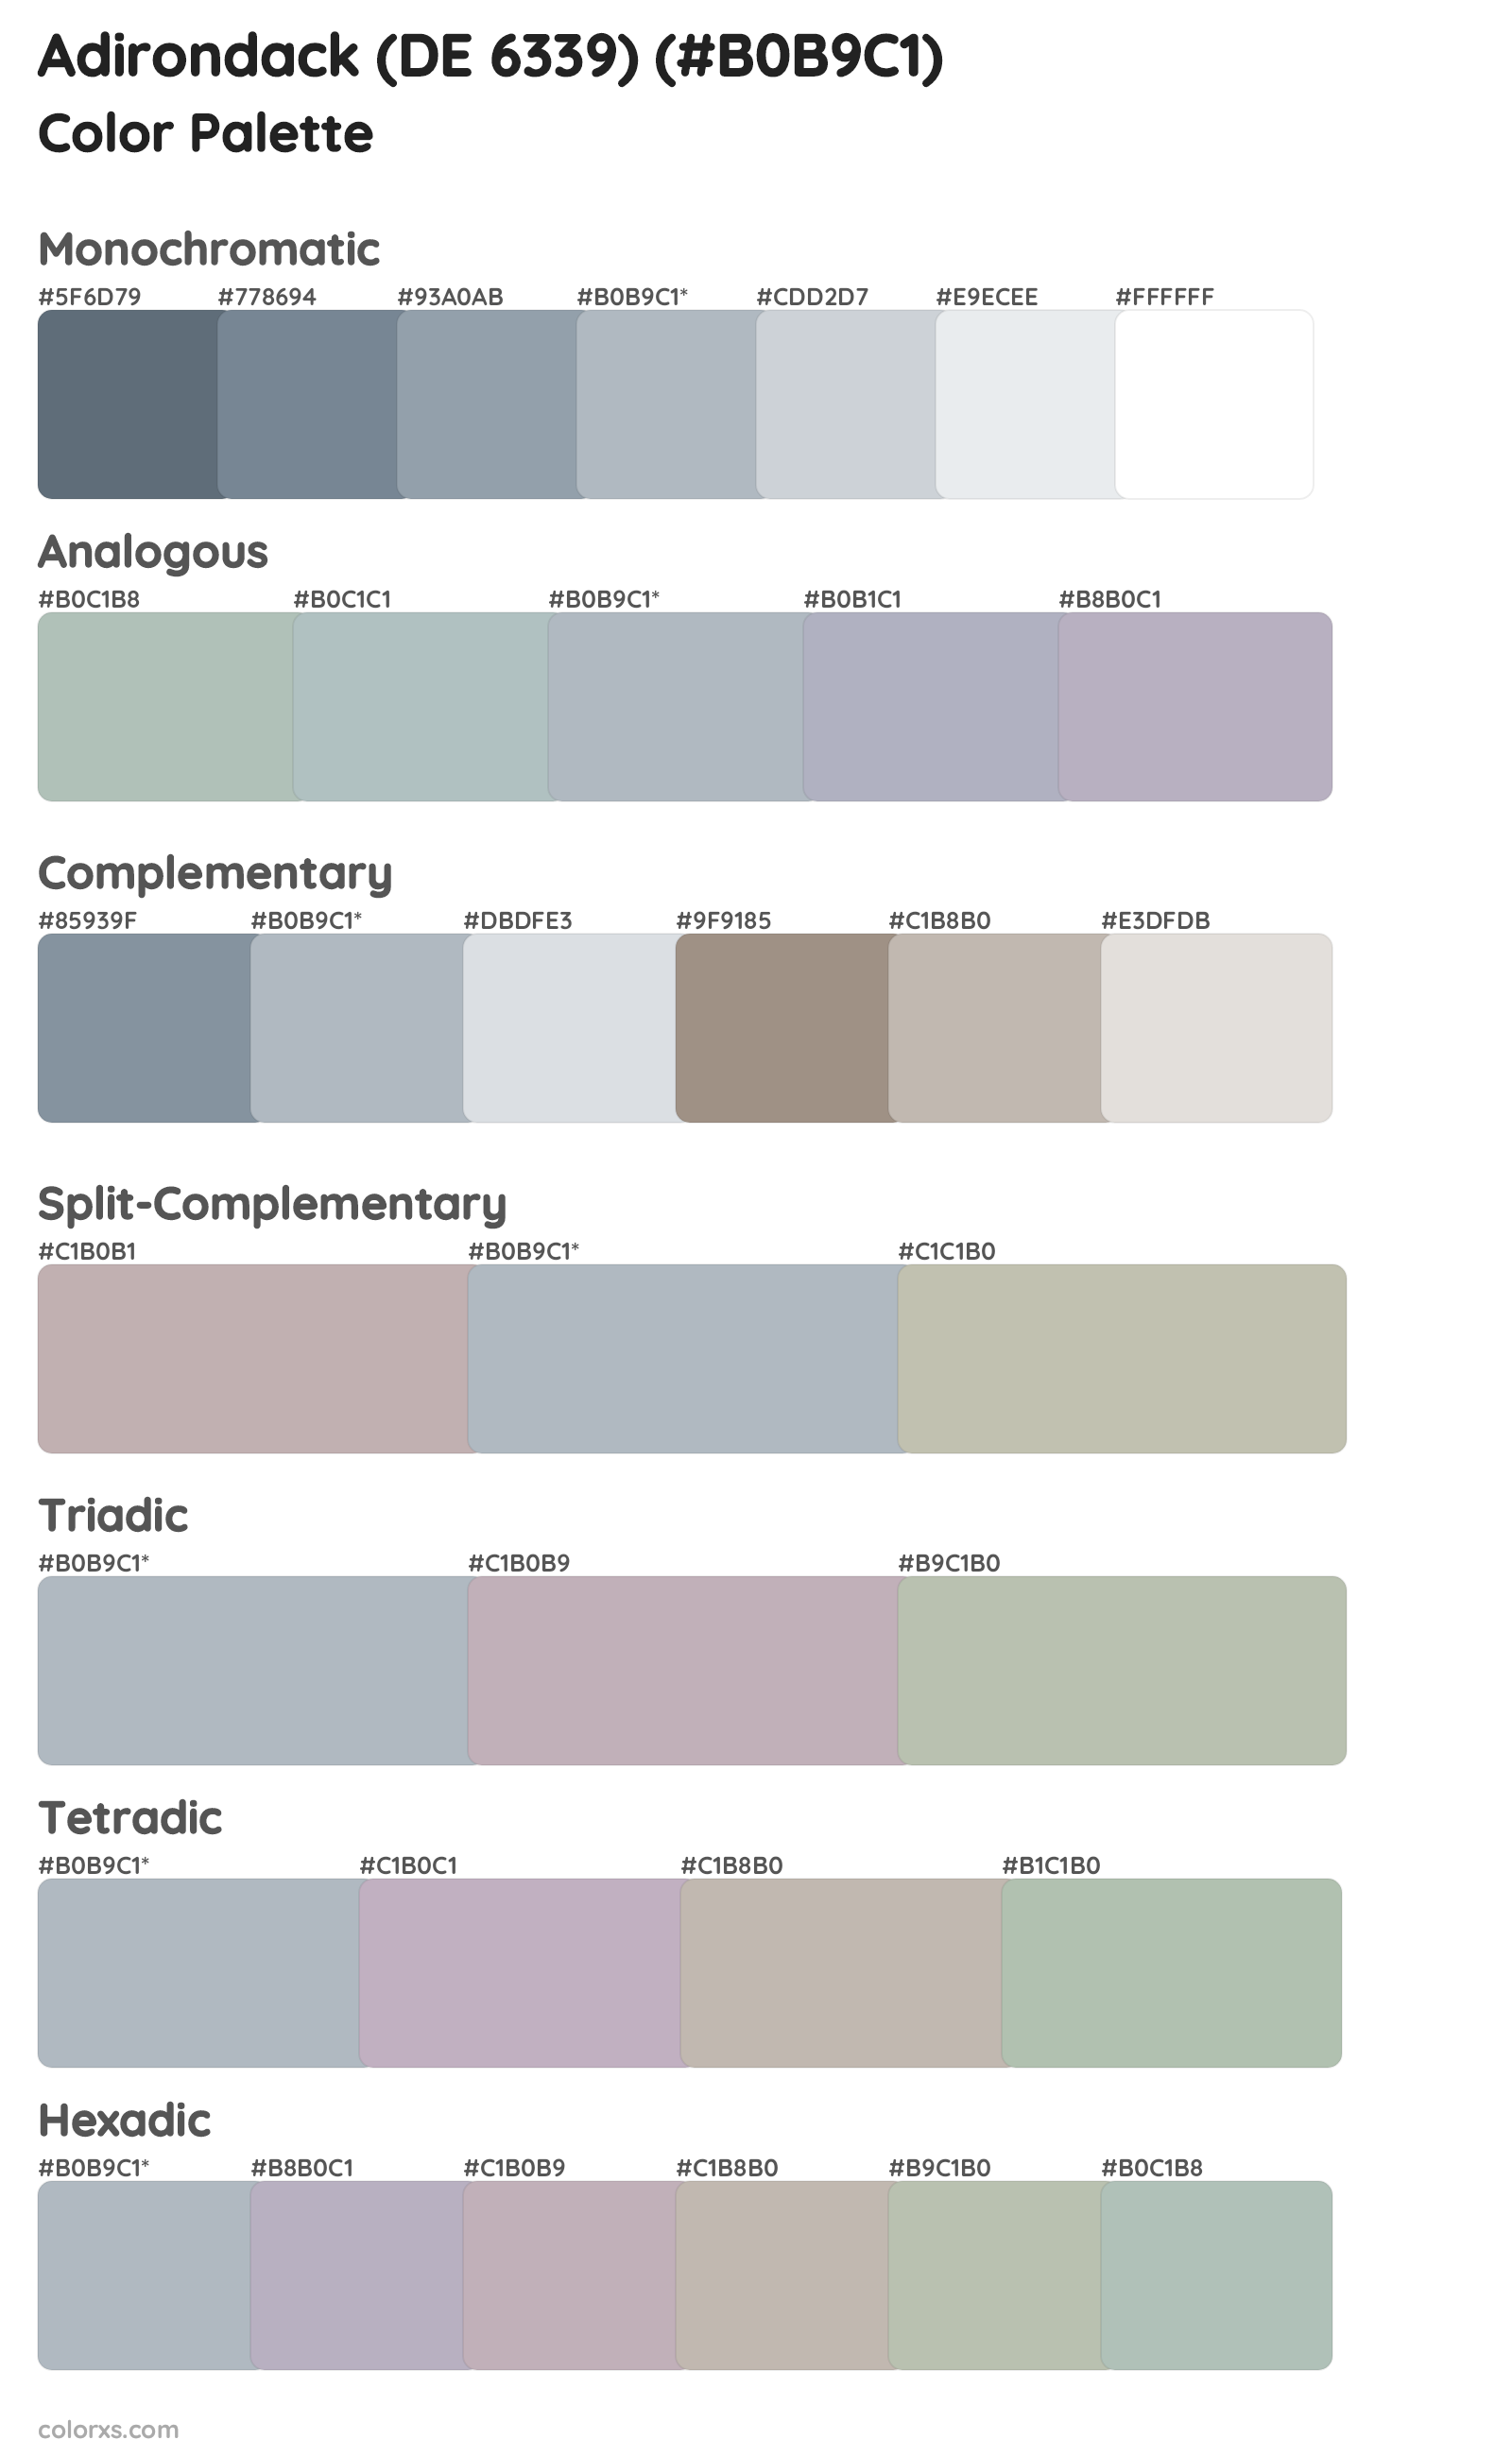 Adirondack (DE 6339) Color Scheme Palettes